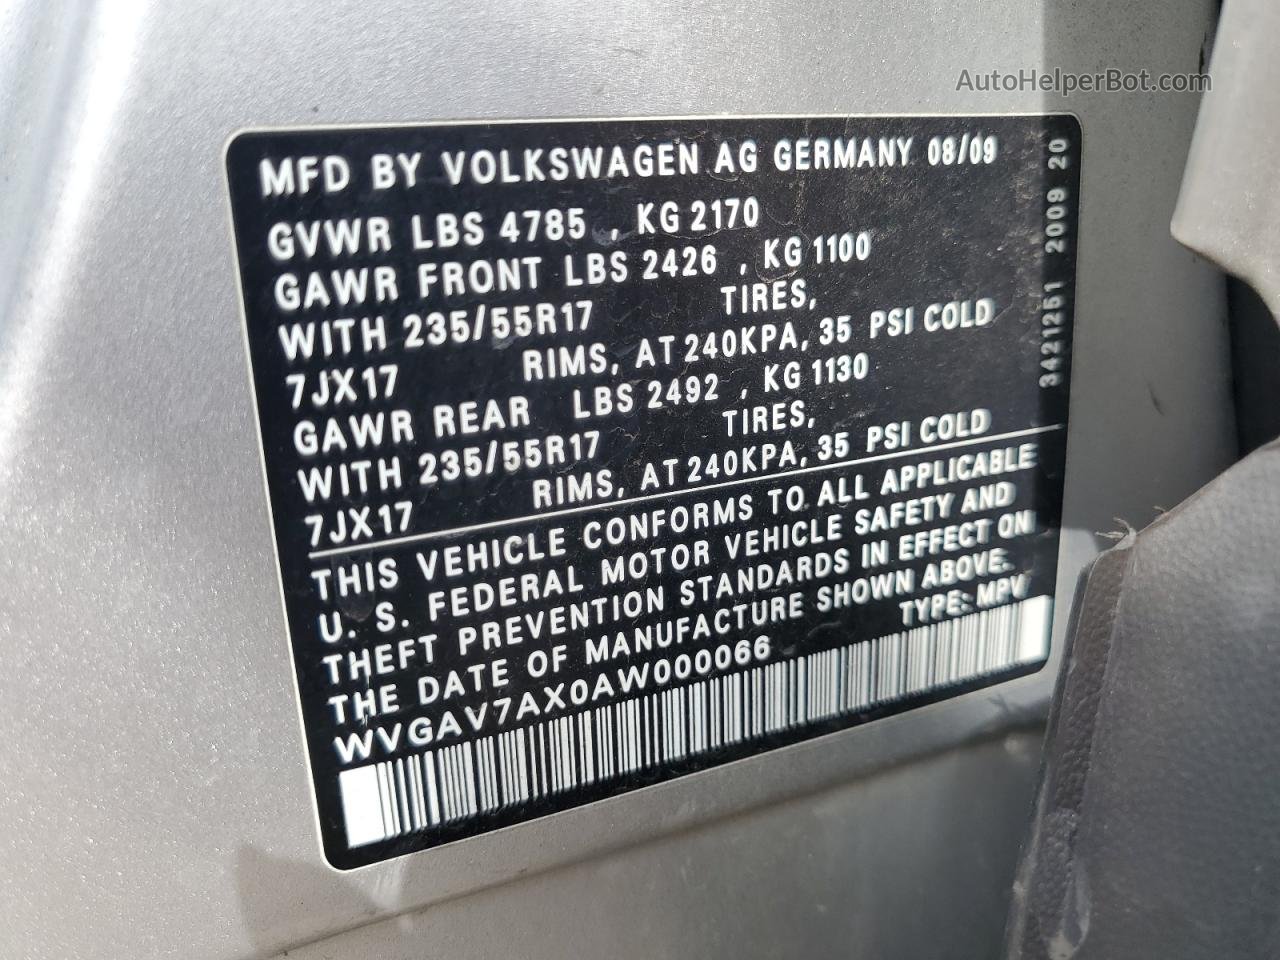 2010 Volkswagen Tiguan S Silver vin: WVGAV7AX0AW000066